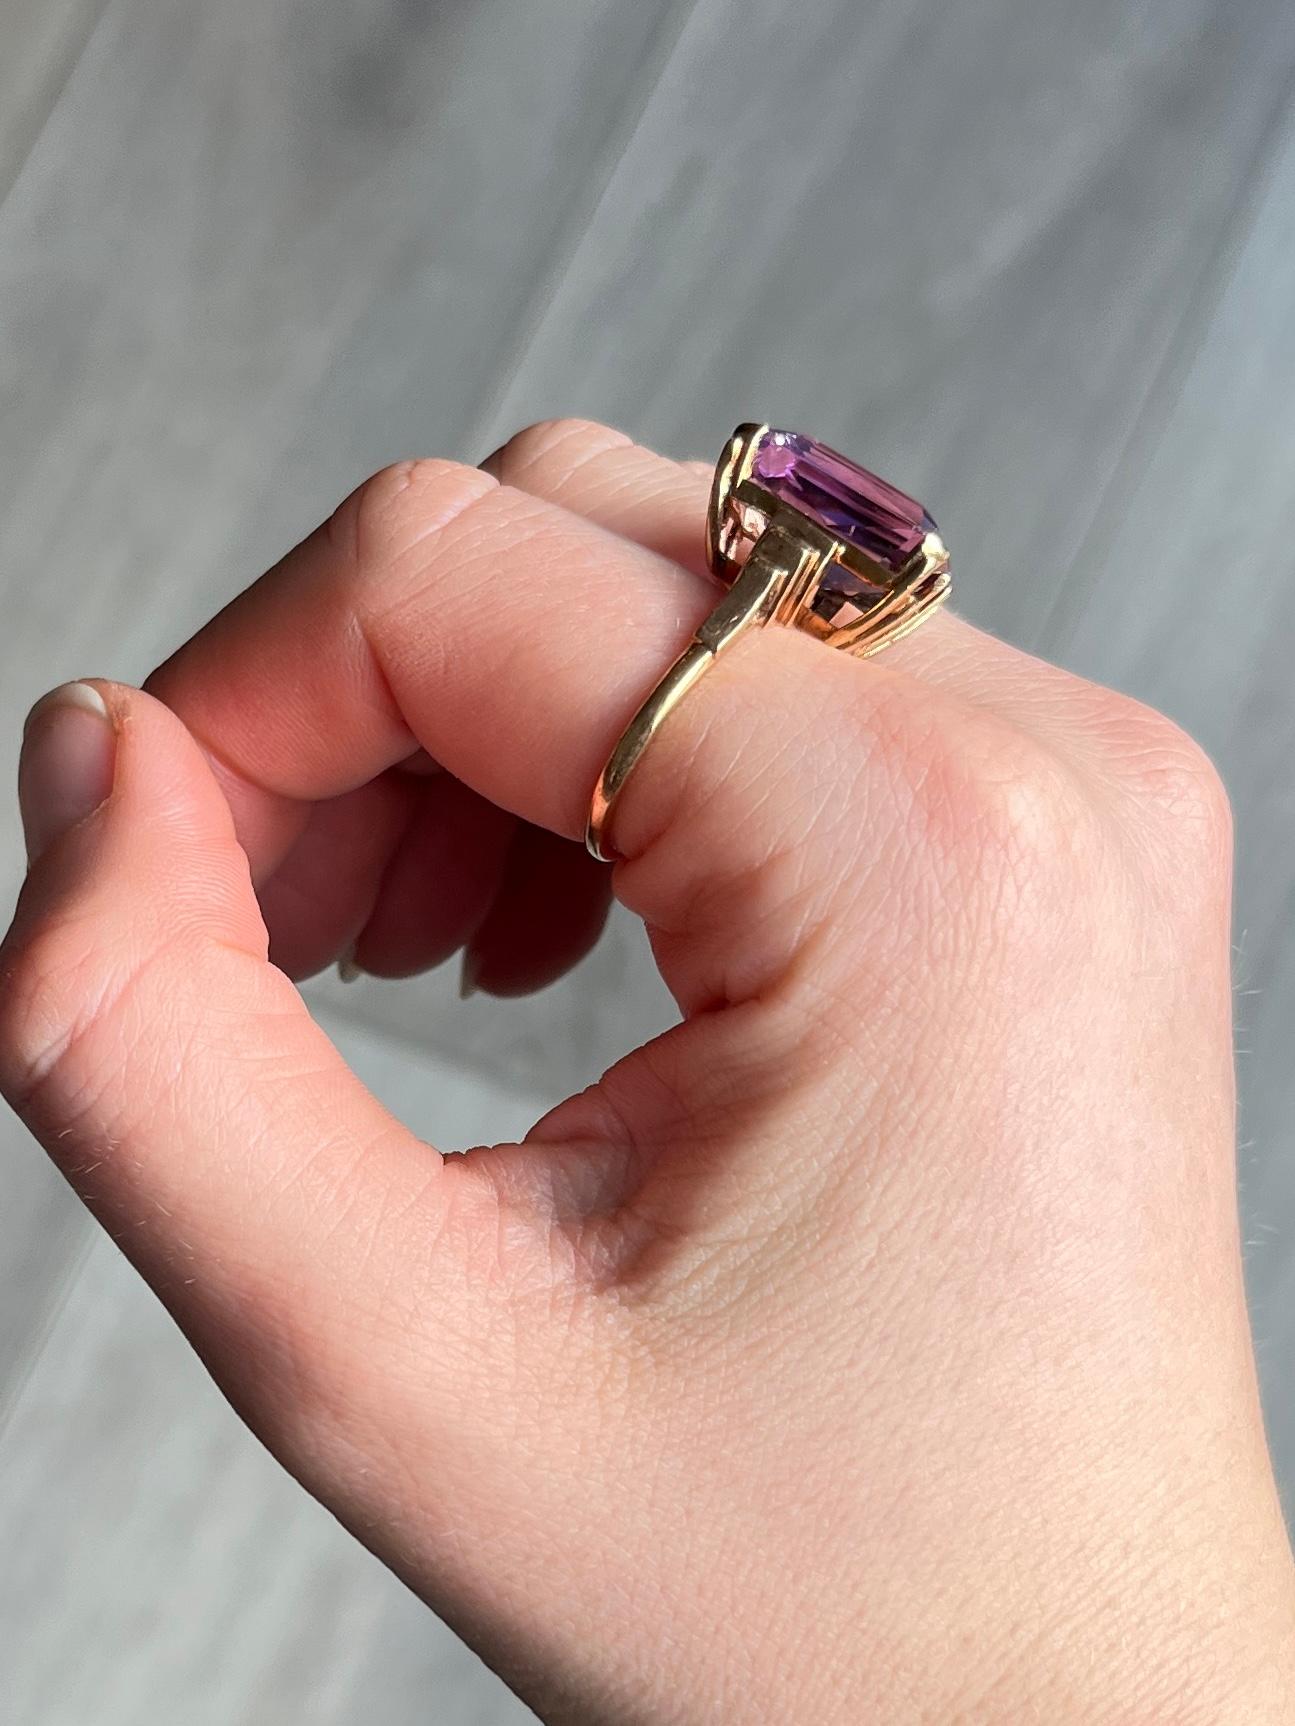 Der Amethyst auf diesem Ring ist ein wunderschöner lila Stein, der in einfachen Krallen gehalten wird. Das Modell ist aus 9-karätigem Gold und hat eine offene Arbeitsgalerie. 

Ringgröße: O 1/2 oder 7 1/2 
Stein Abmessungen: 17x14mm 

Gewicht: 7,4 g